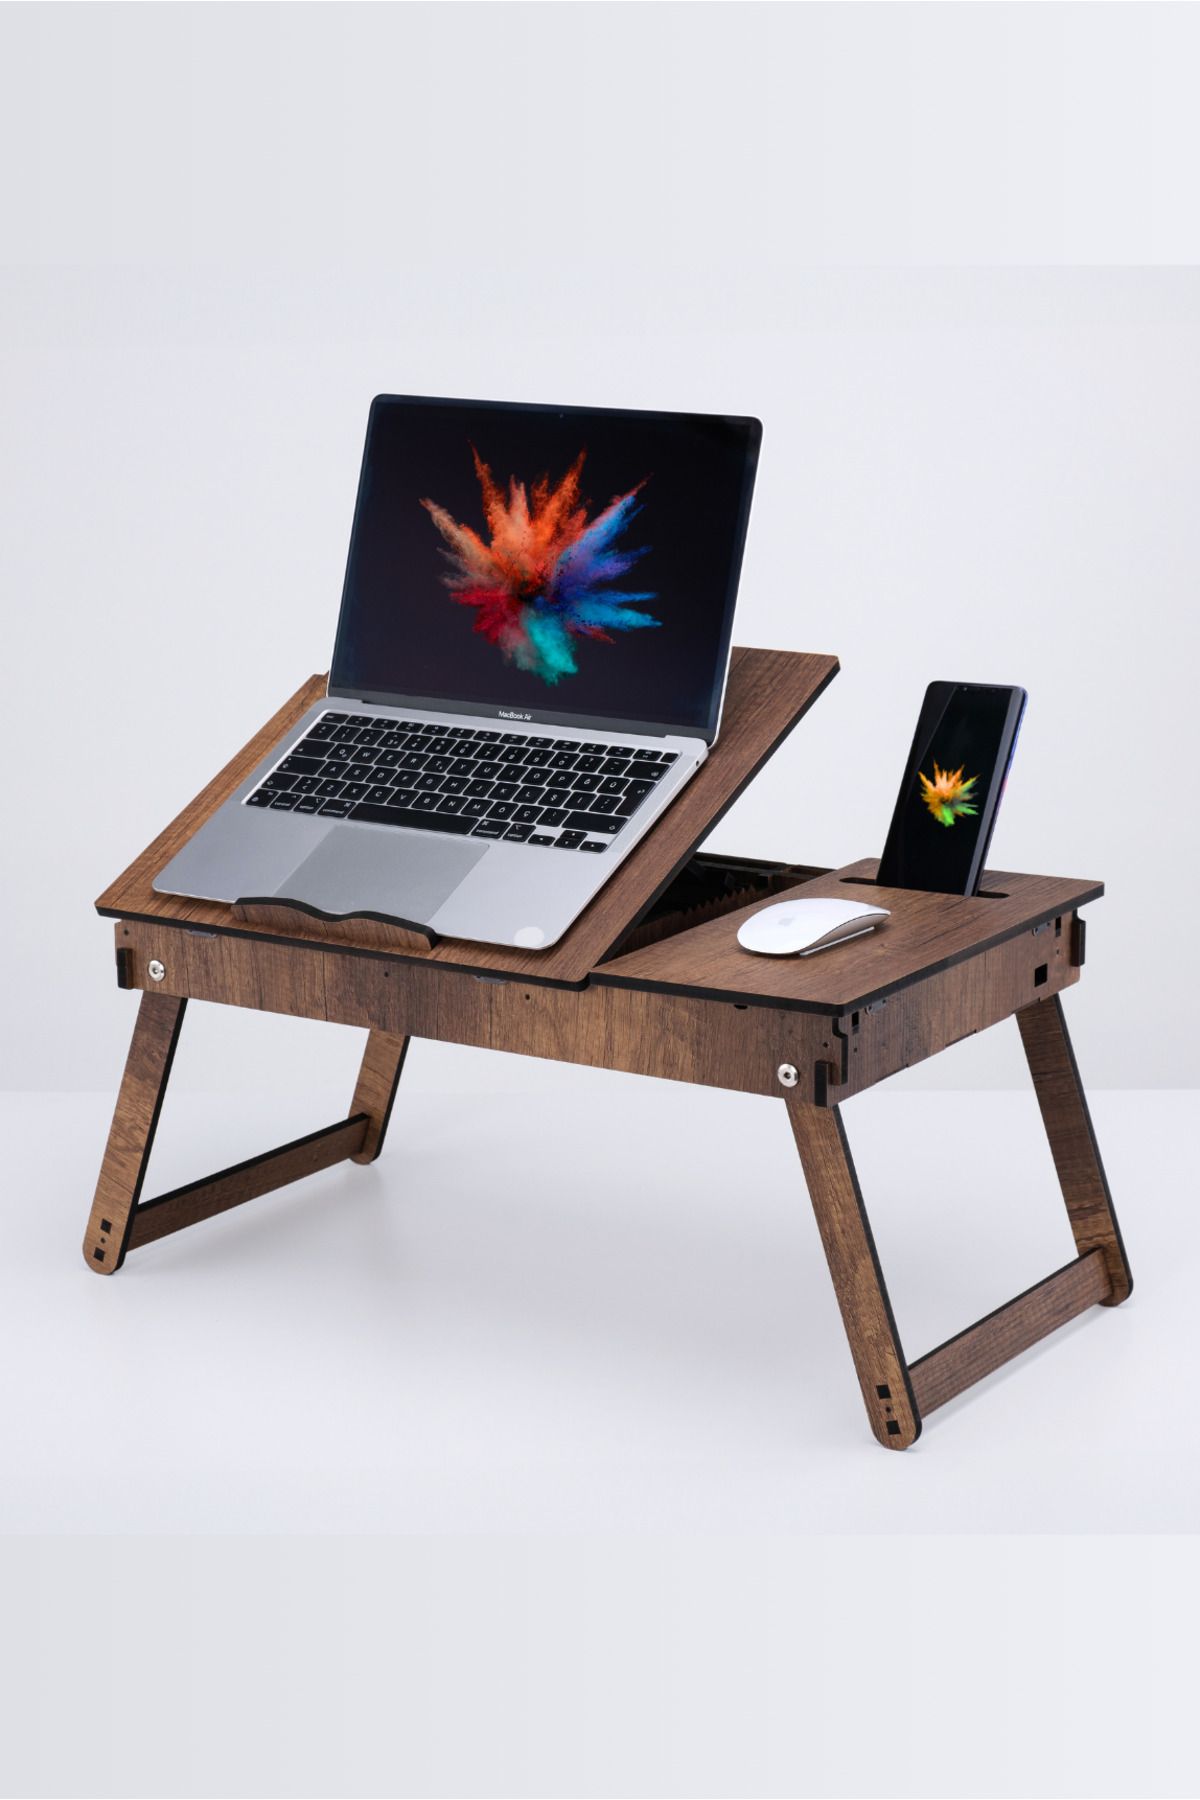 Vigo Wood Katlanır Ayaklı Ayarlanabilir Laptop Sehpası Telefon Bölmeli Bilgisayar Çalışma Sehpası